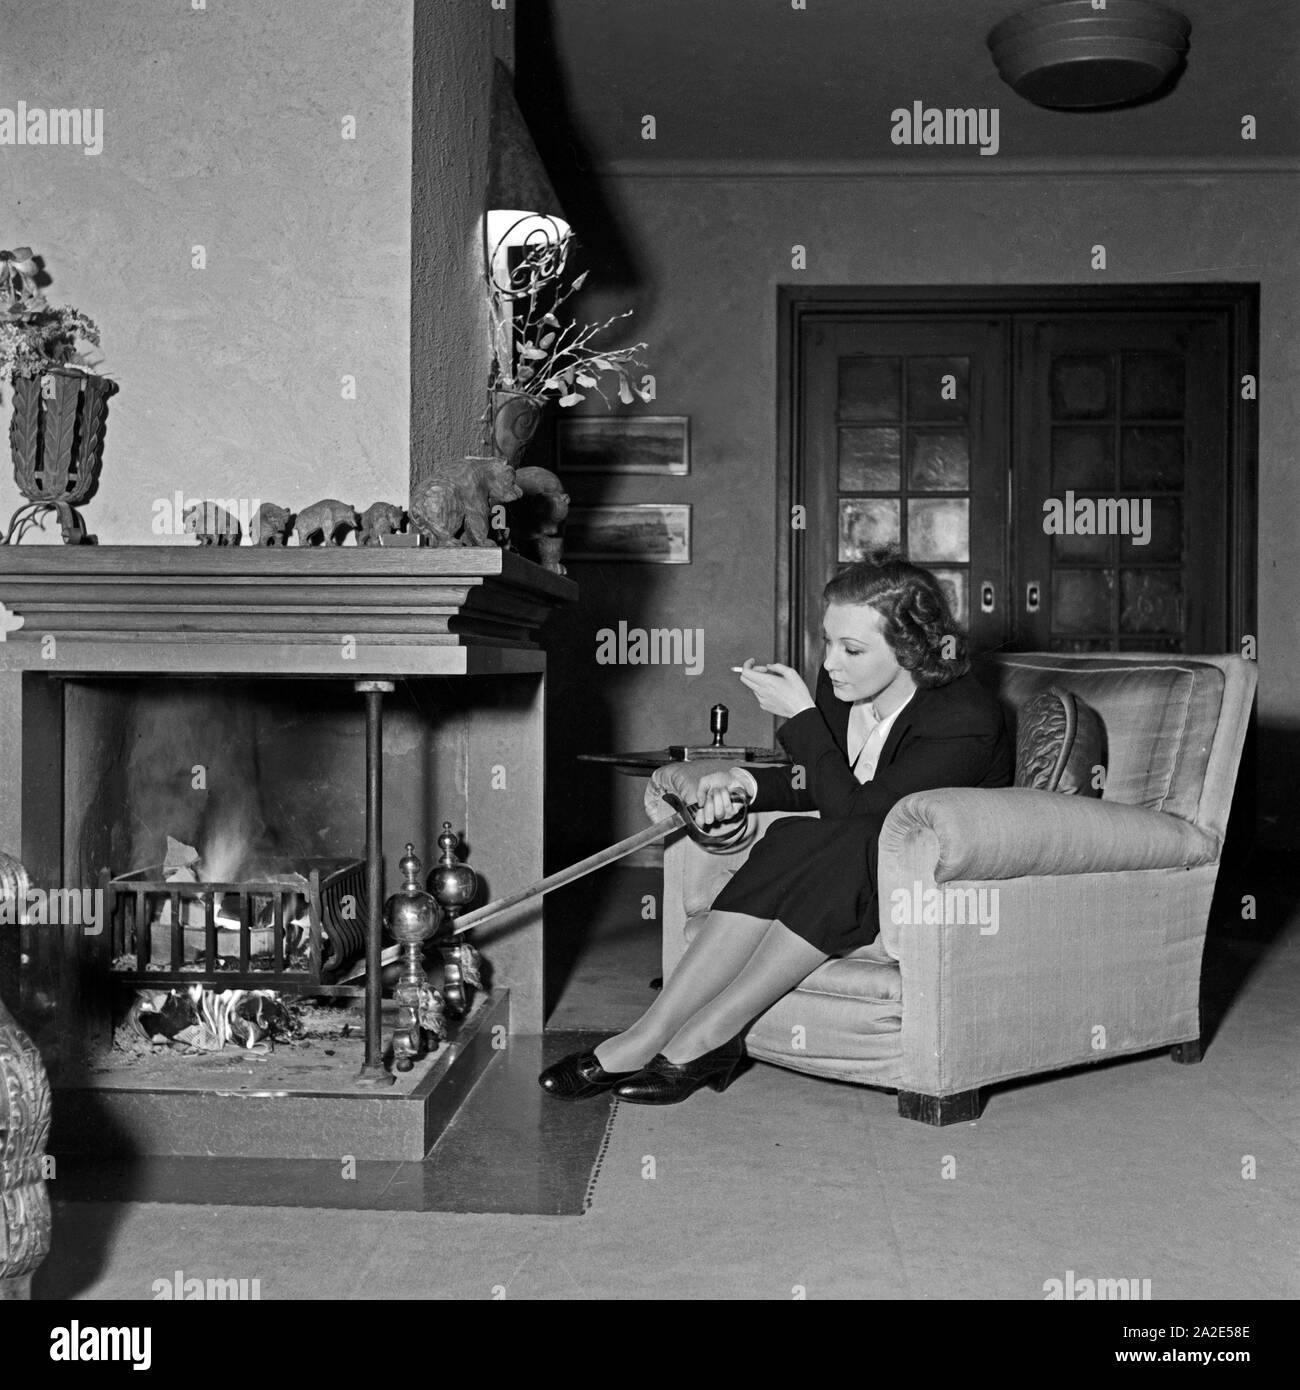 Die schwedische Fictitious character und Sängerin Zarah Leander am Kamin in ihrem Haus in Berlin, Deutschland, 1930er Jahre. Schwedische Sängerin und Schauspielerin Zarah Leander am Kamin in Ihrem Haus in Berlin, Deutschland 1930. Stockfoto